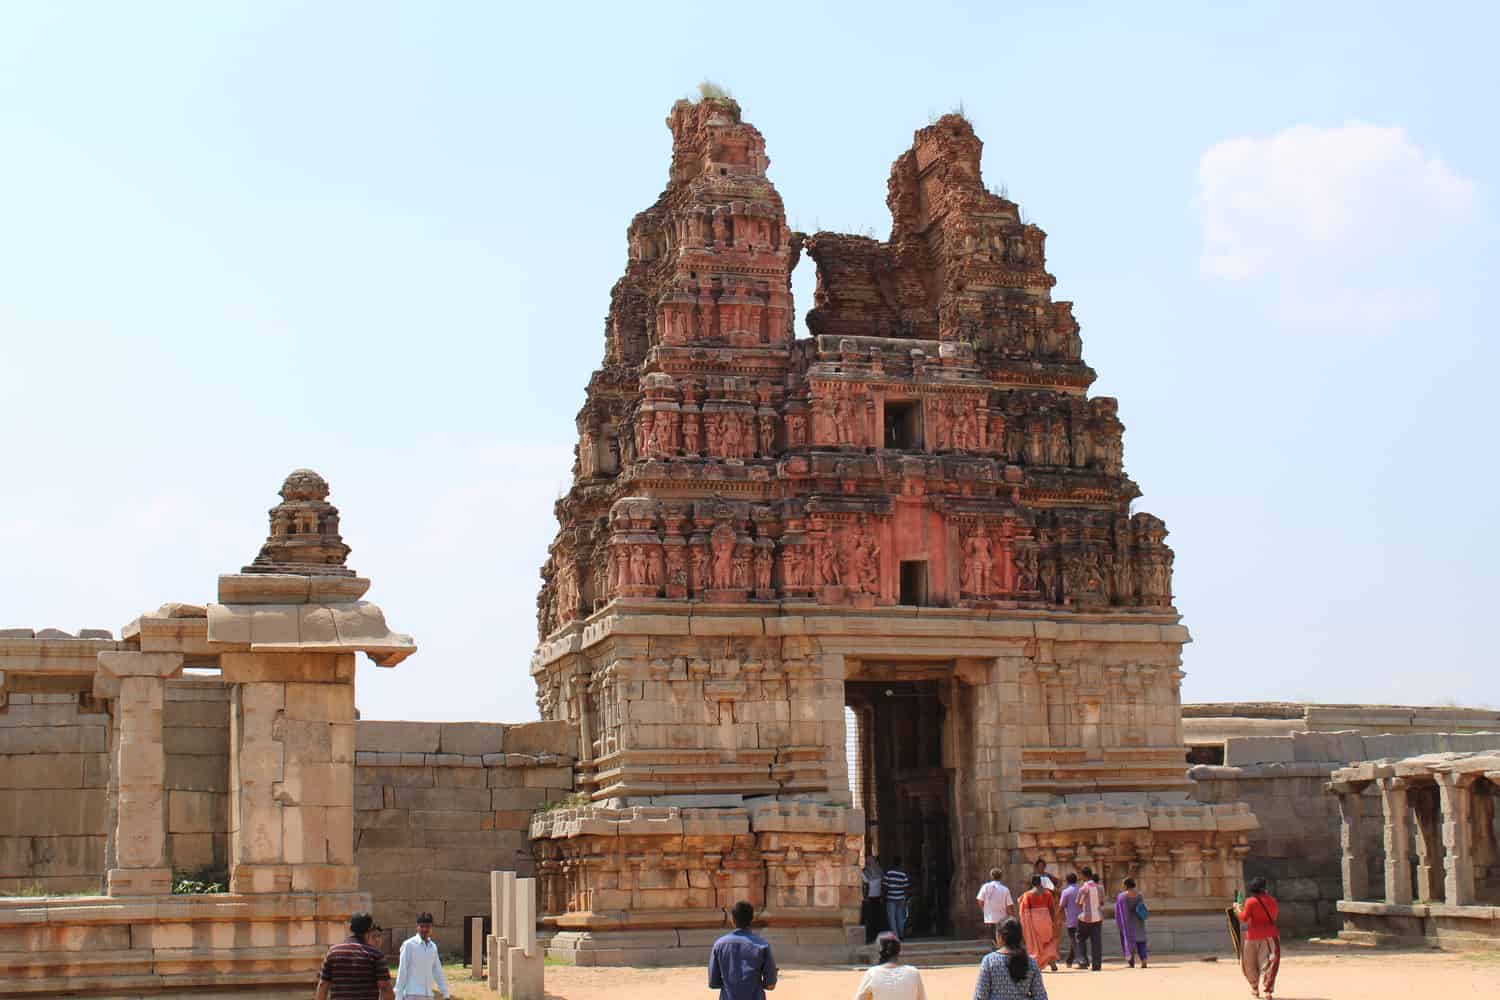 Achyuta Ram temple, Hampi, Karnataka